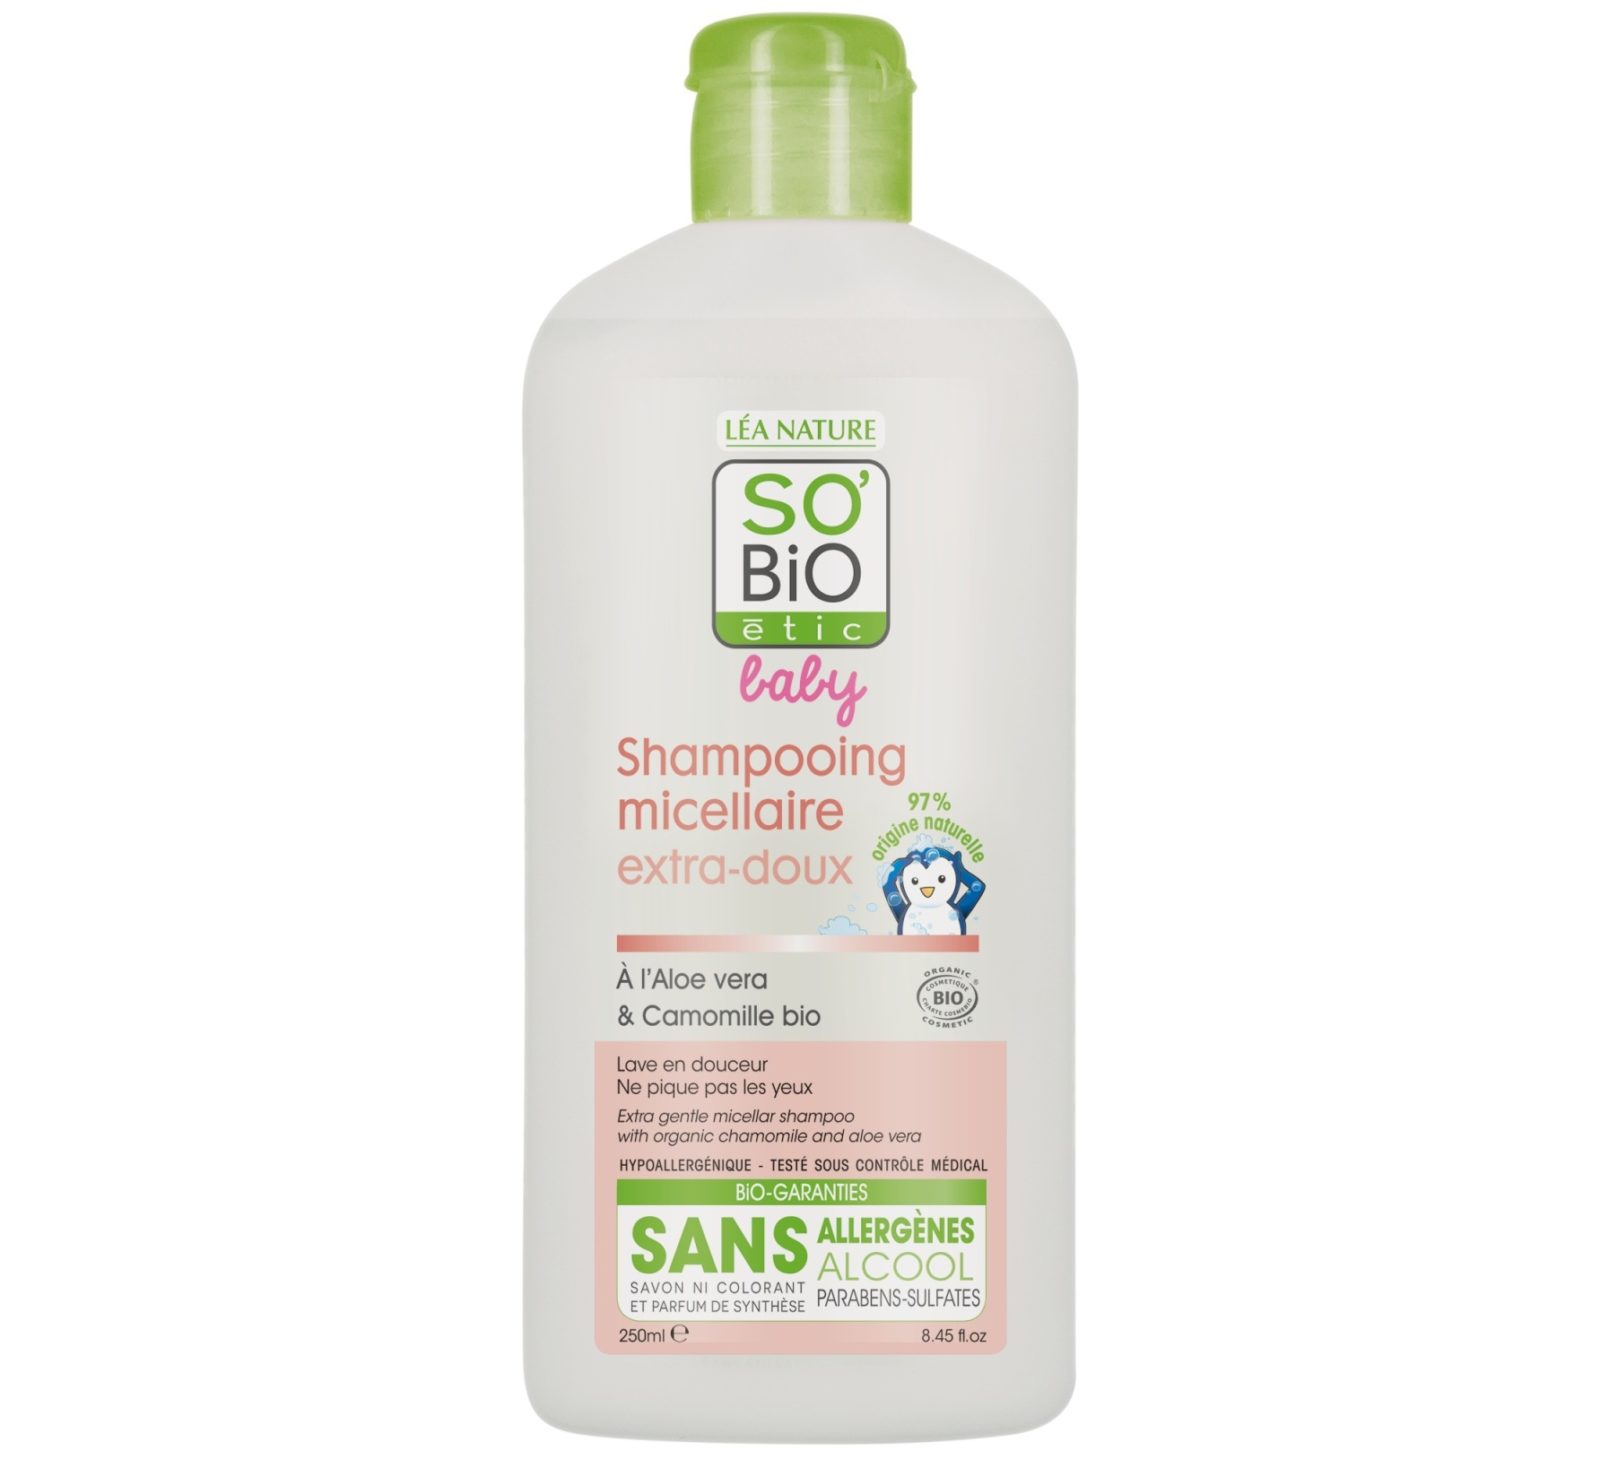 szampon bio dla niemowlat